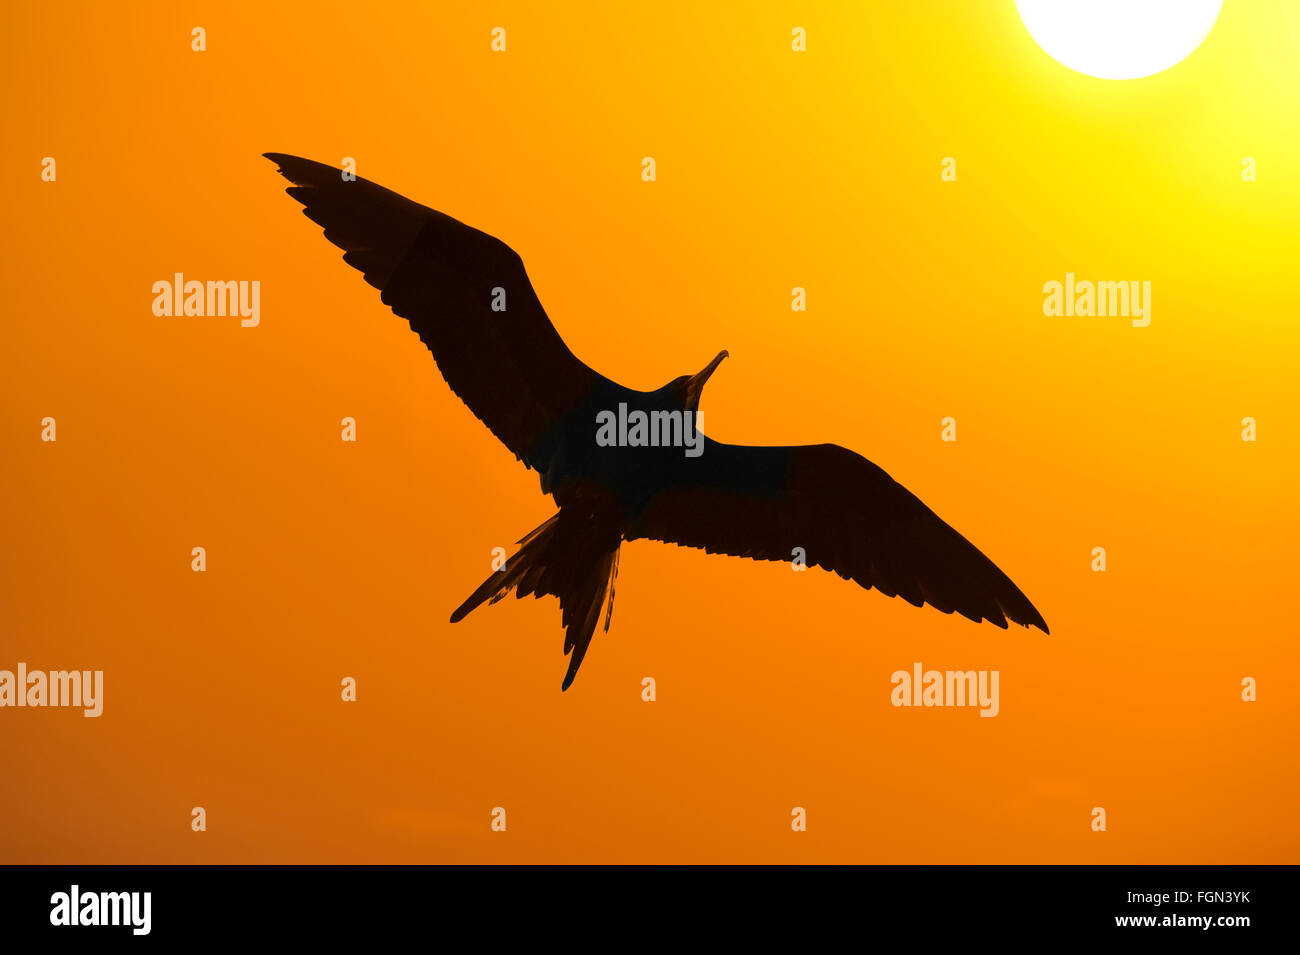 Vogel Silhouette Ist Eine Nahaufnahme Detaillierte Silhouette Eines Vogels Mit Einer Orangefarbenen Himmel Fliegen Und Gluhende Sonne Strahlend Im Hintergrund Stockfotografie Alamy